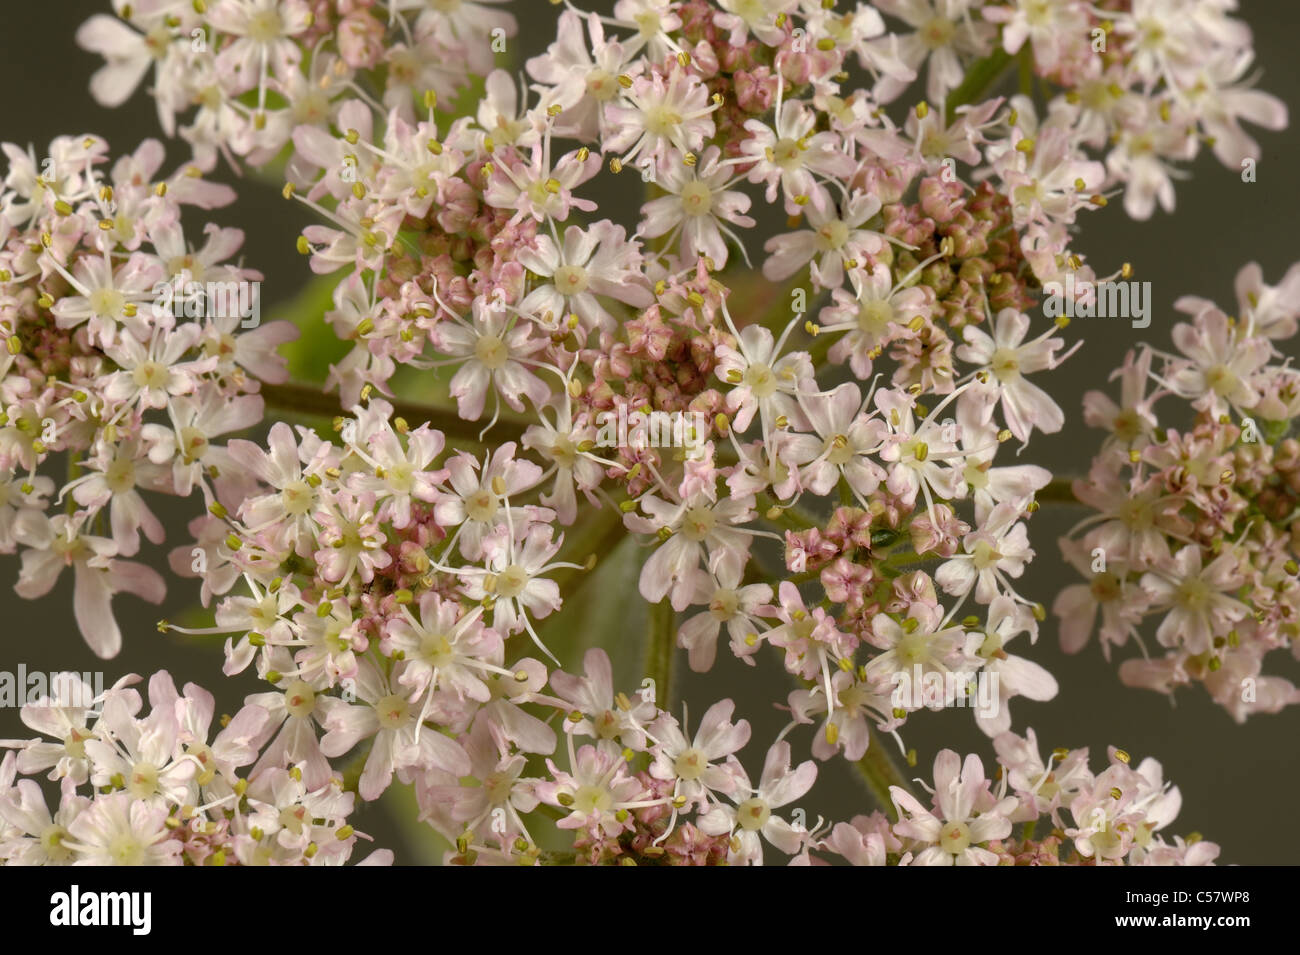 Hogweed (Heracleum sphondylium) florets in a flowering umbel Stock Photo